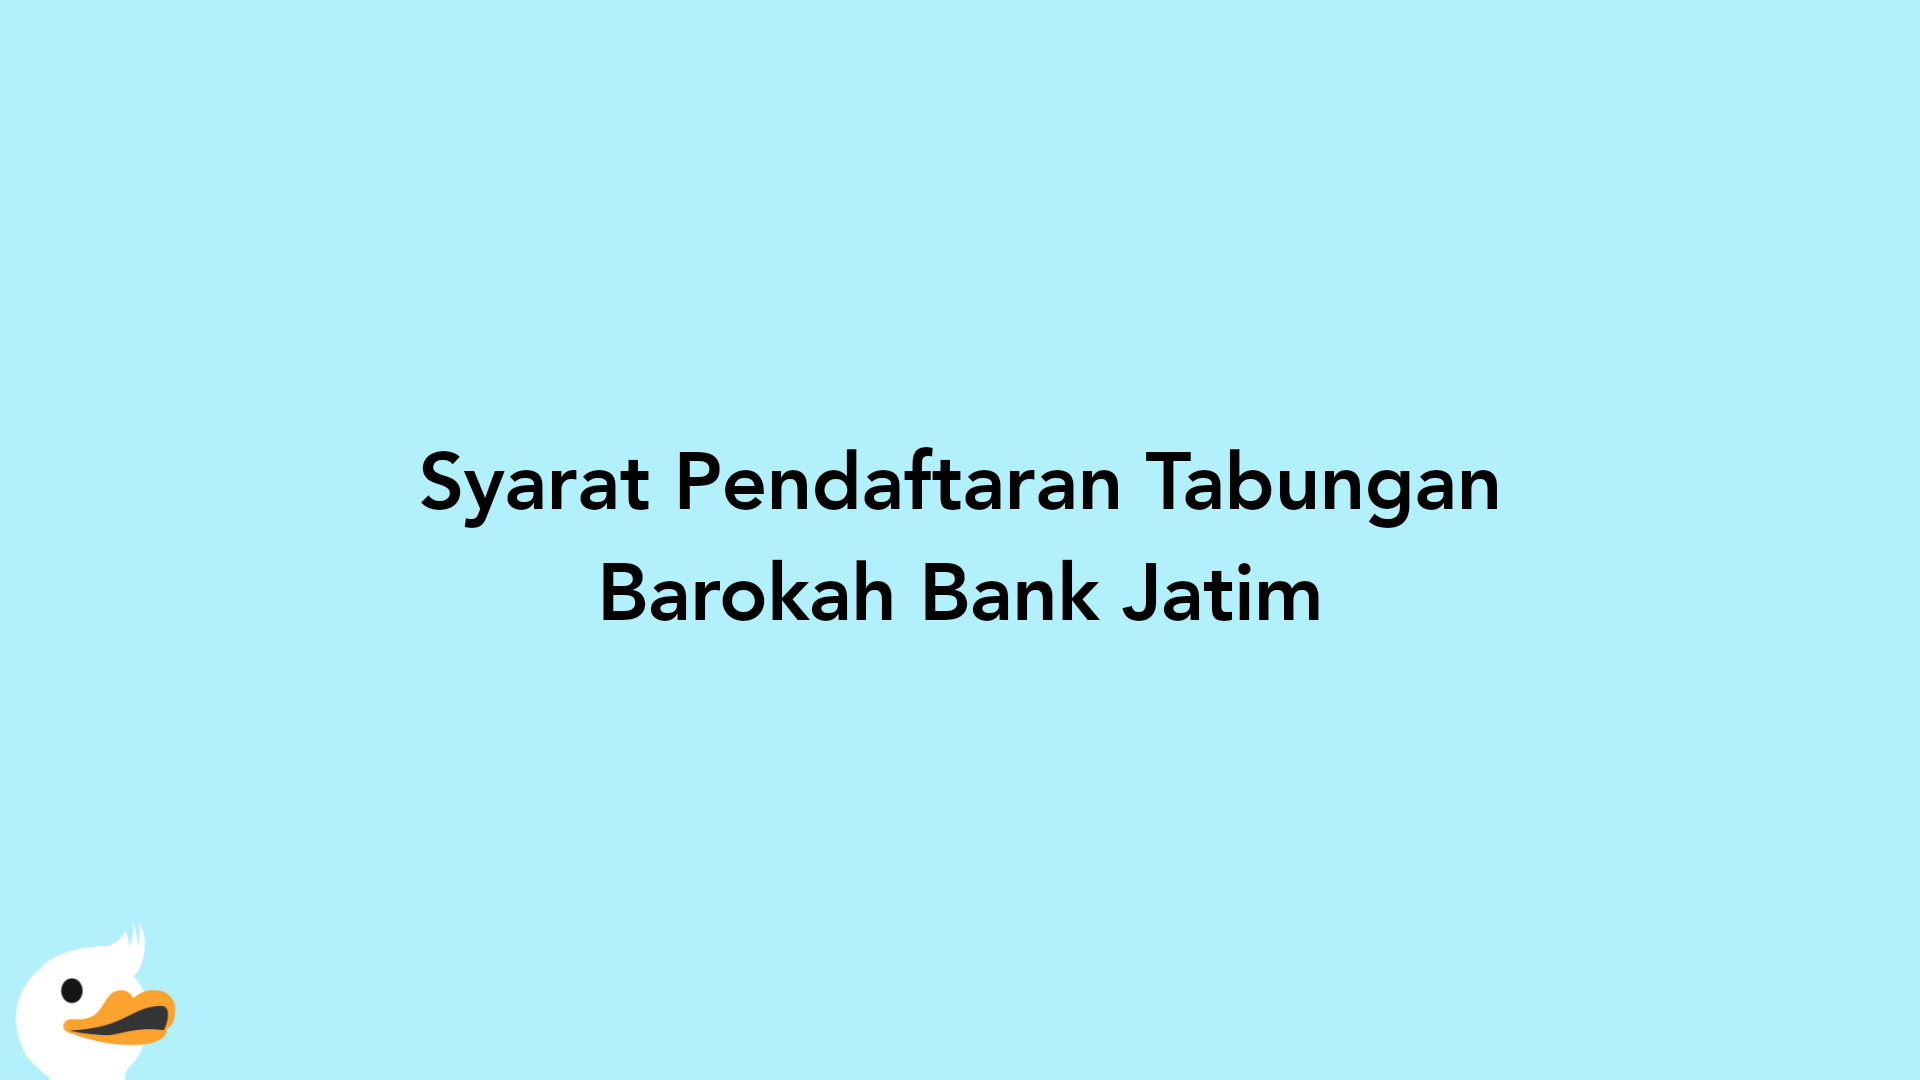 Syarat Pendaftaran Tabungan Barokah Bank Jatim